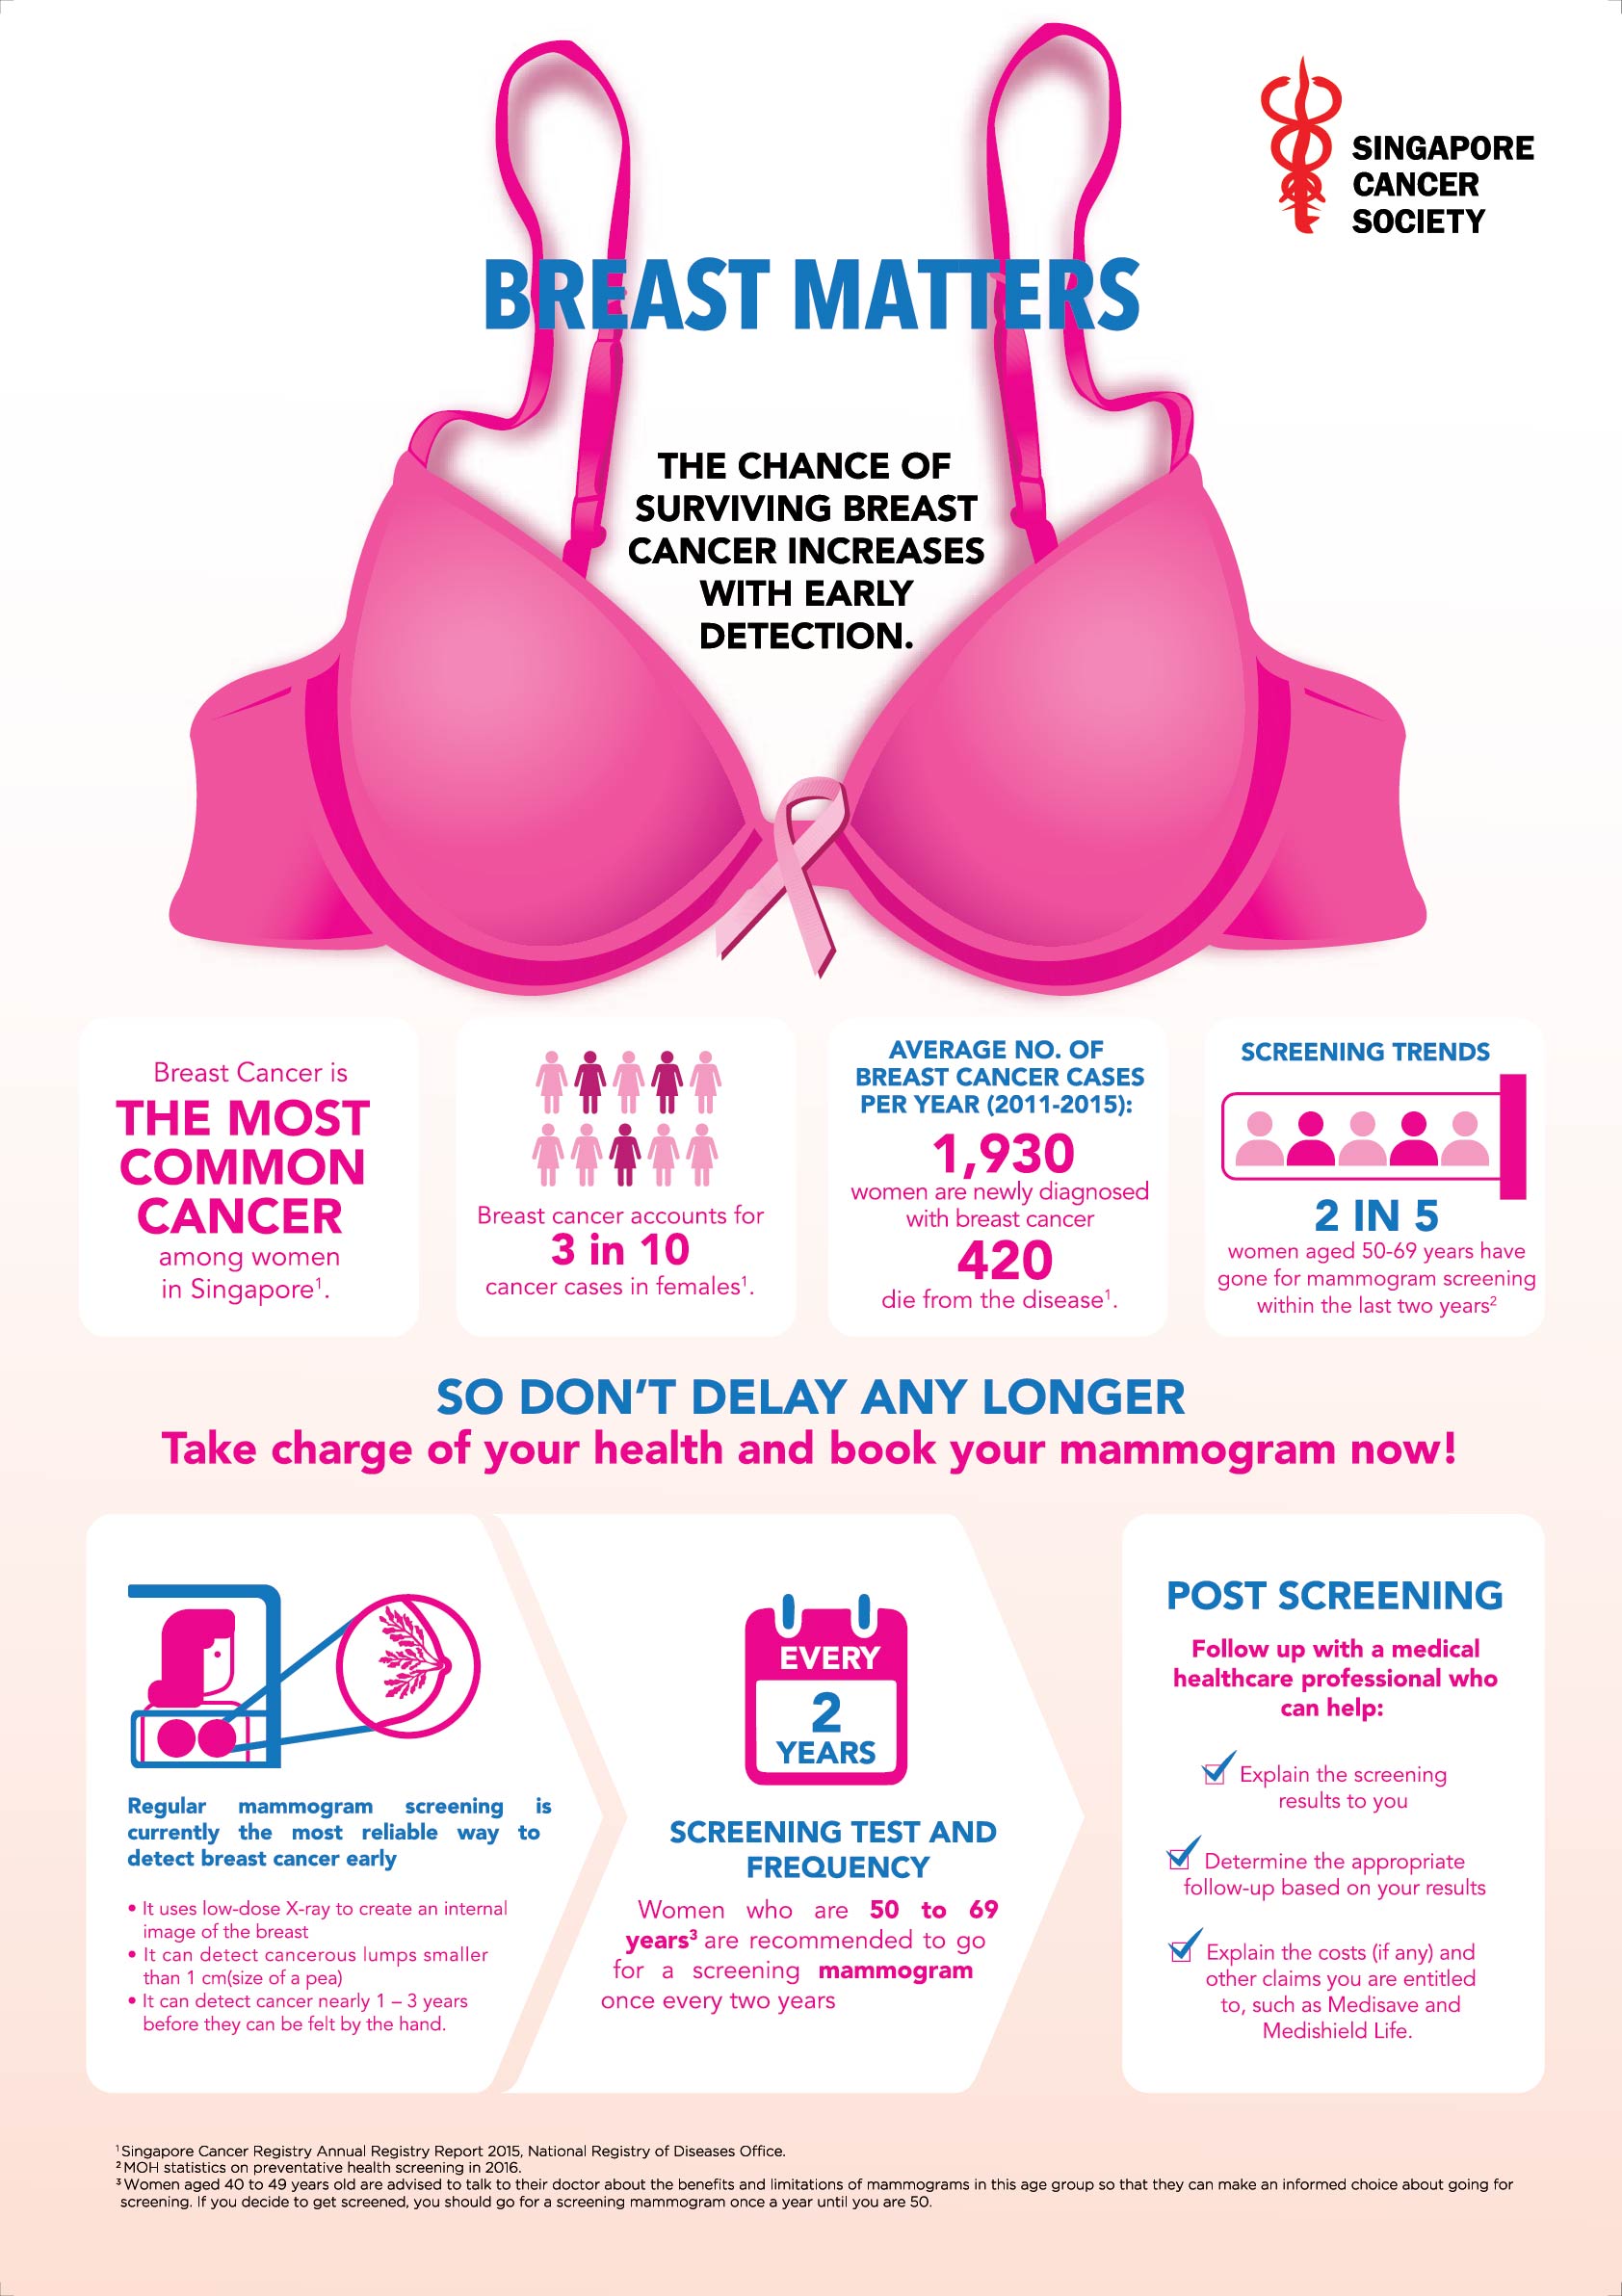 Mammogram Screening